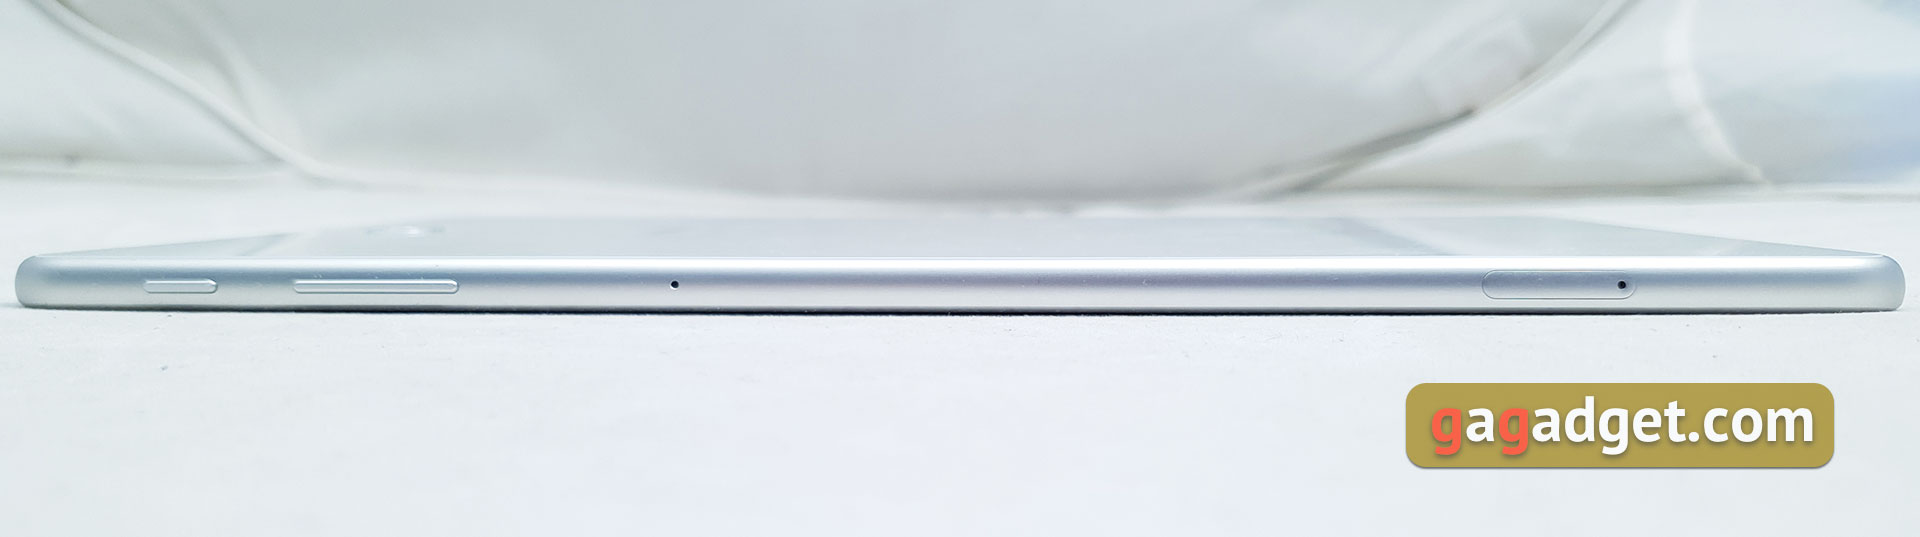 Обзор Samsung Galaxy Tab S4: флагманский планшет с действительно интересными фишками-5